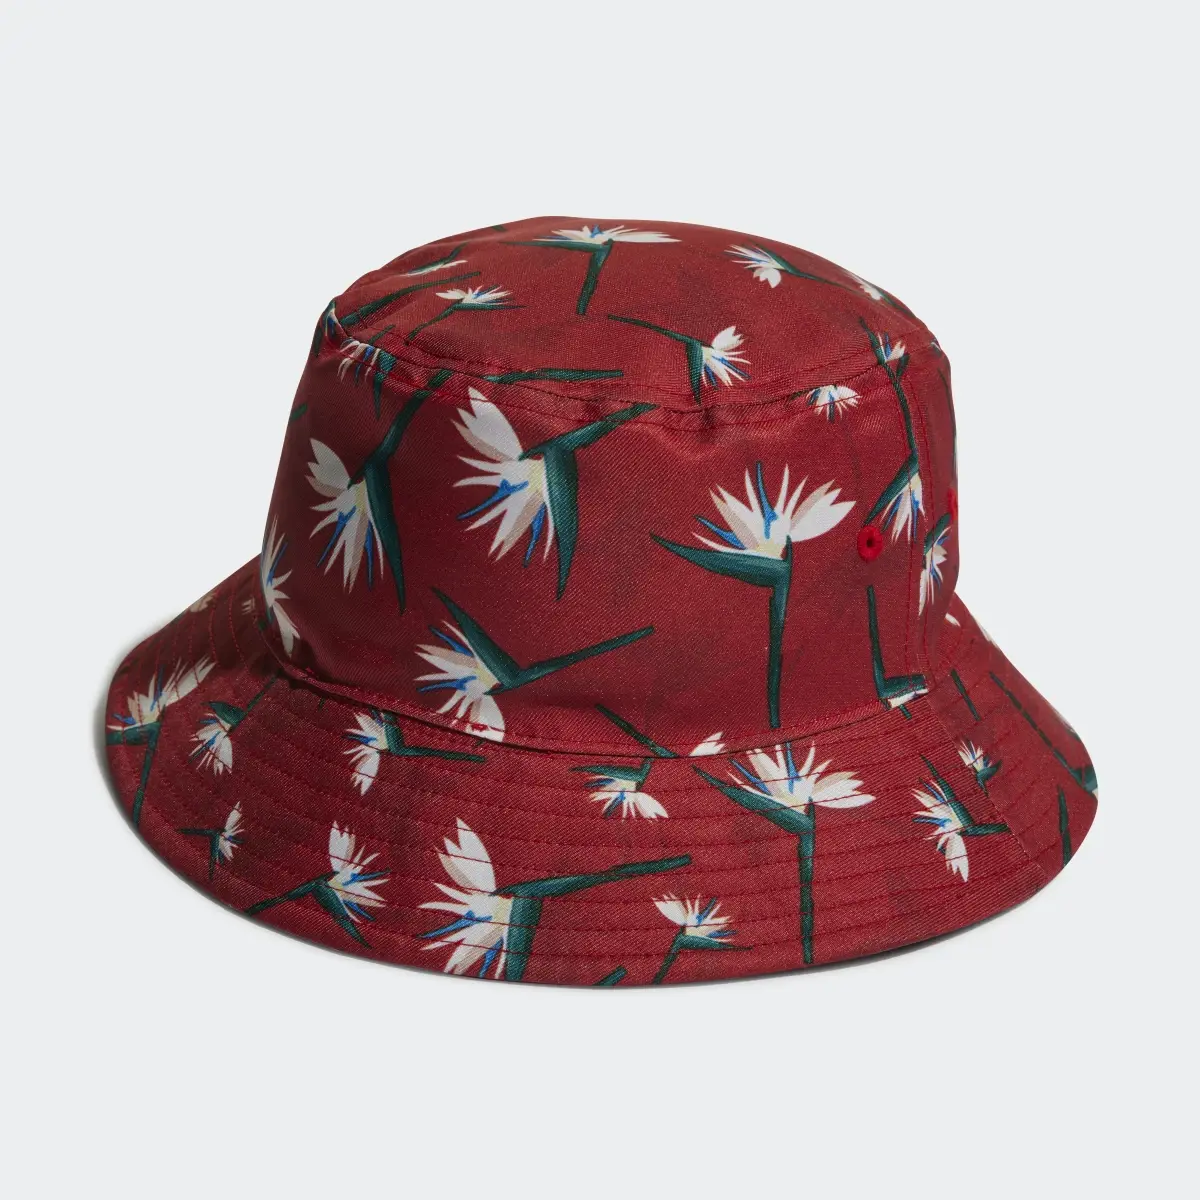 Adidas Thebe Magugu Bucket Hat. 3